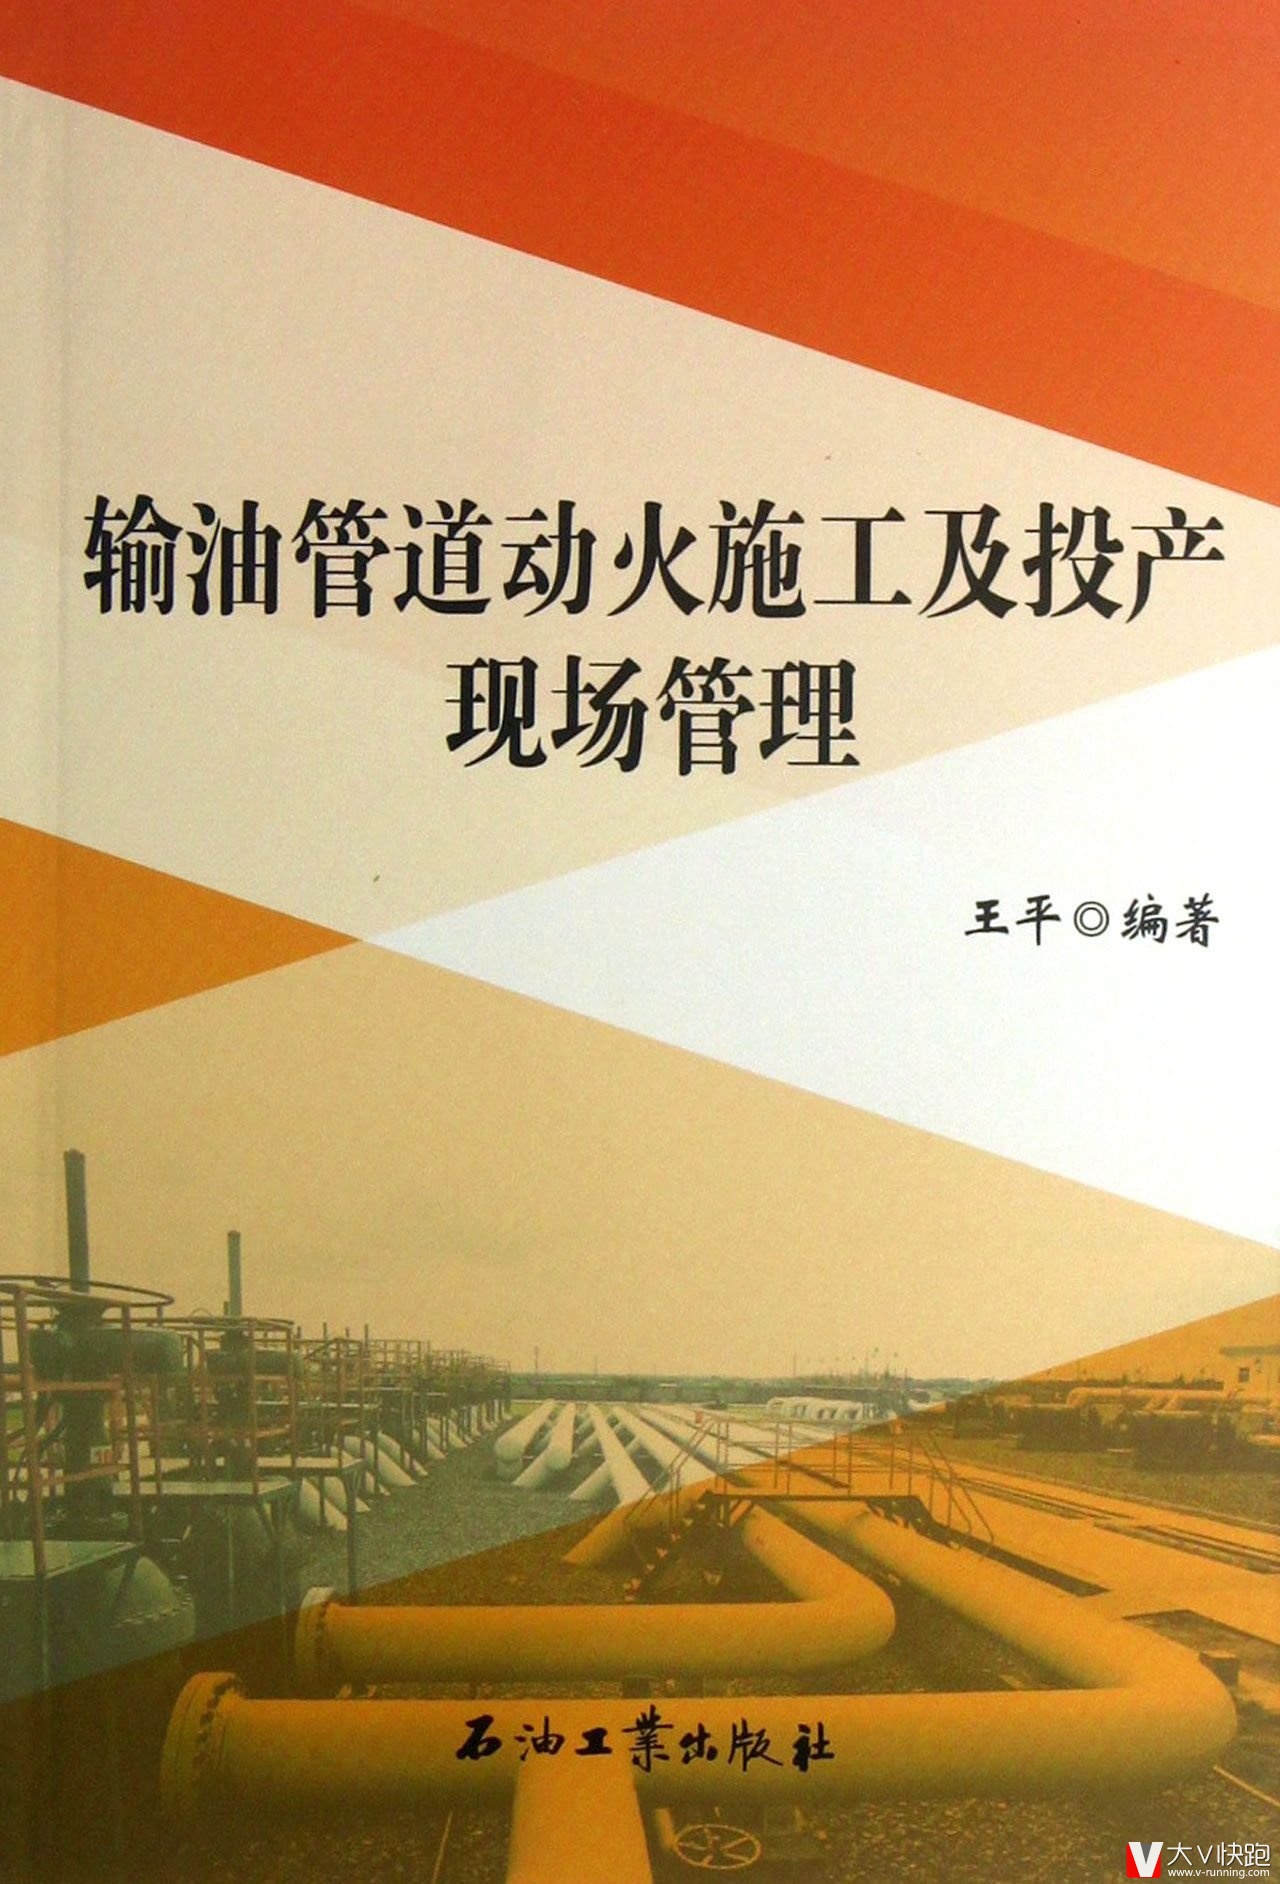 输油管道动火施工及投产现场管理王平(作者)石油工业出版社